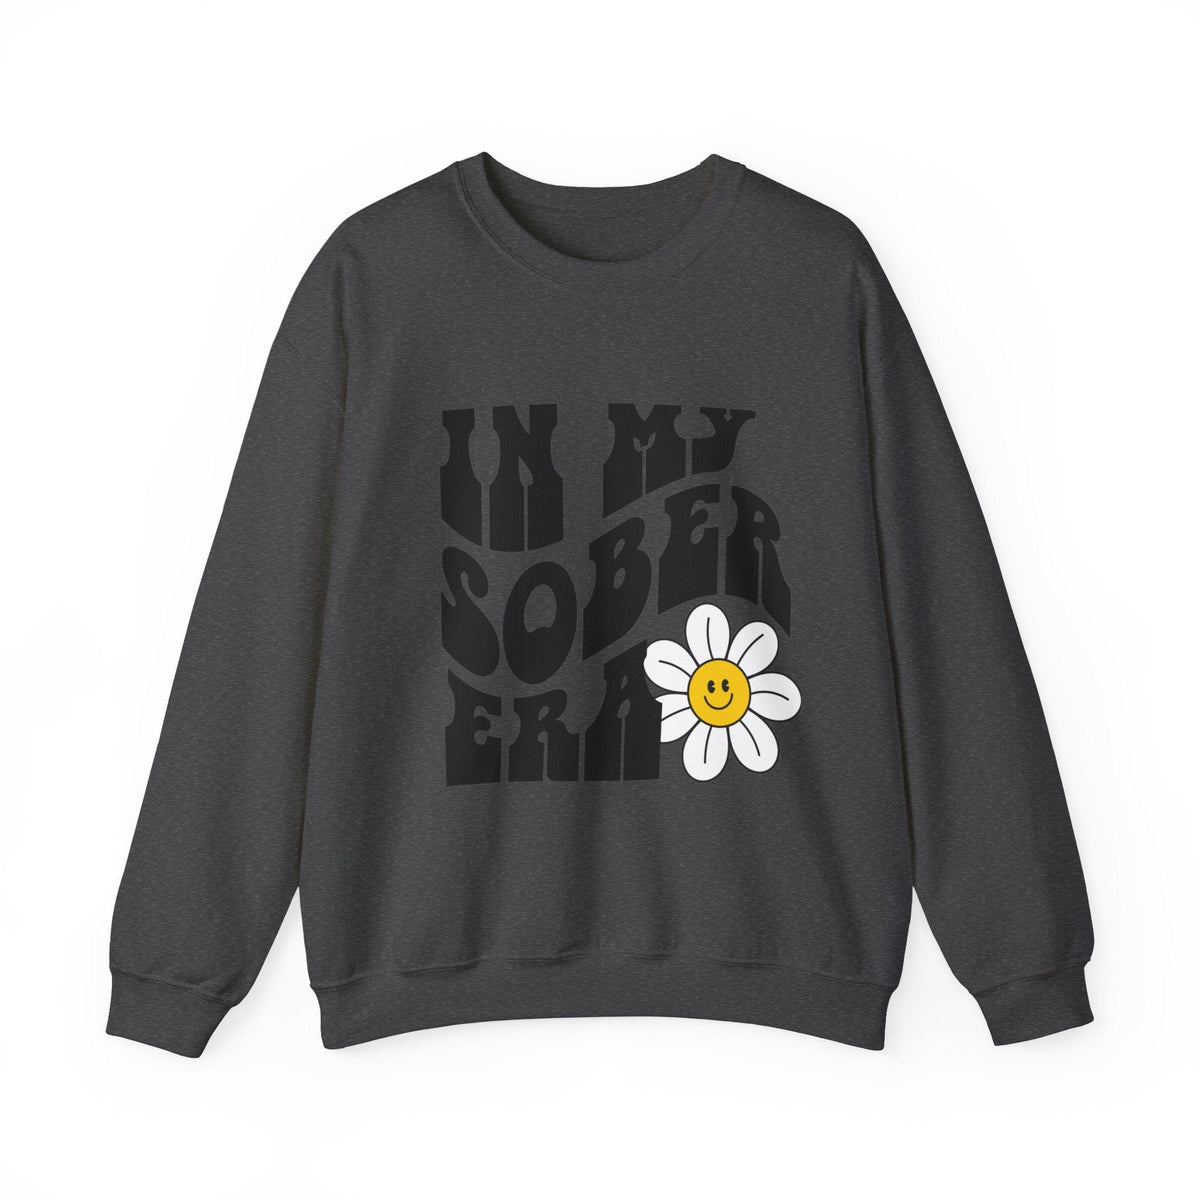 In My Sober Era Crewneck Sweatshirt | Smiling Face Flower | Trendy Wave Text Sweatshirt TheFringeCultureCollective